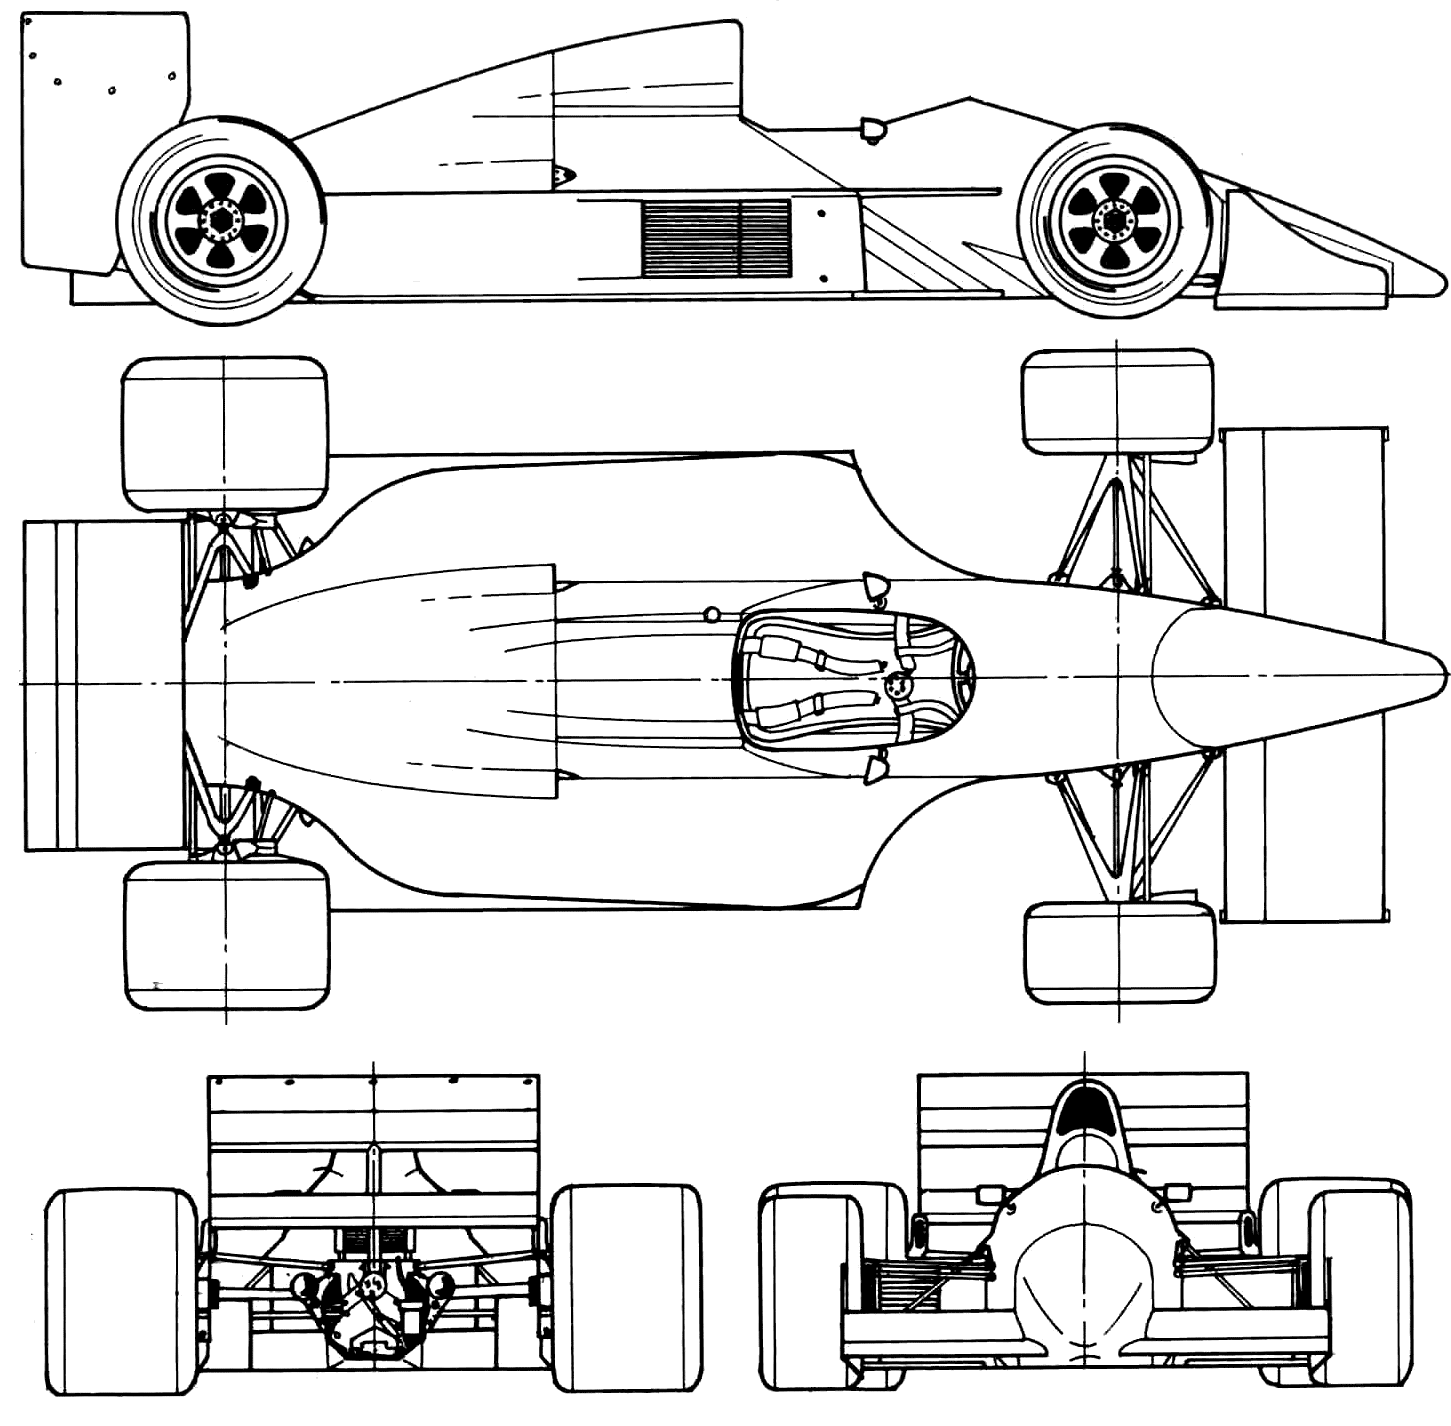 Tyrrell blueprints. car blueprints. 